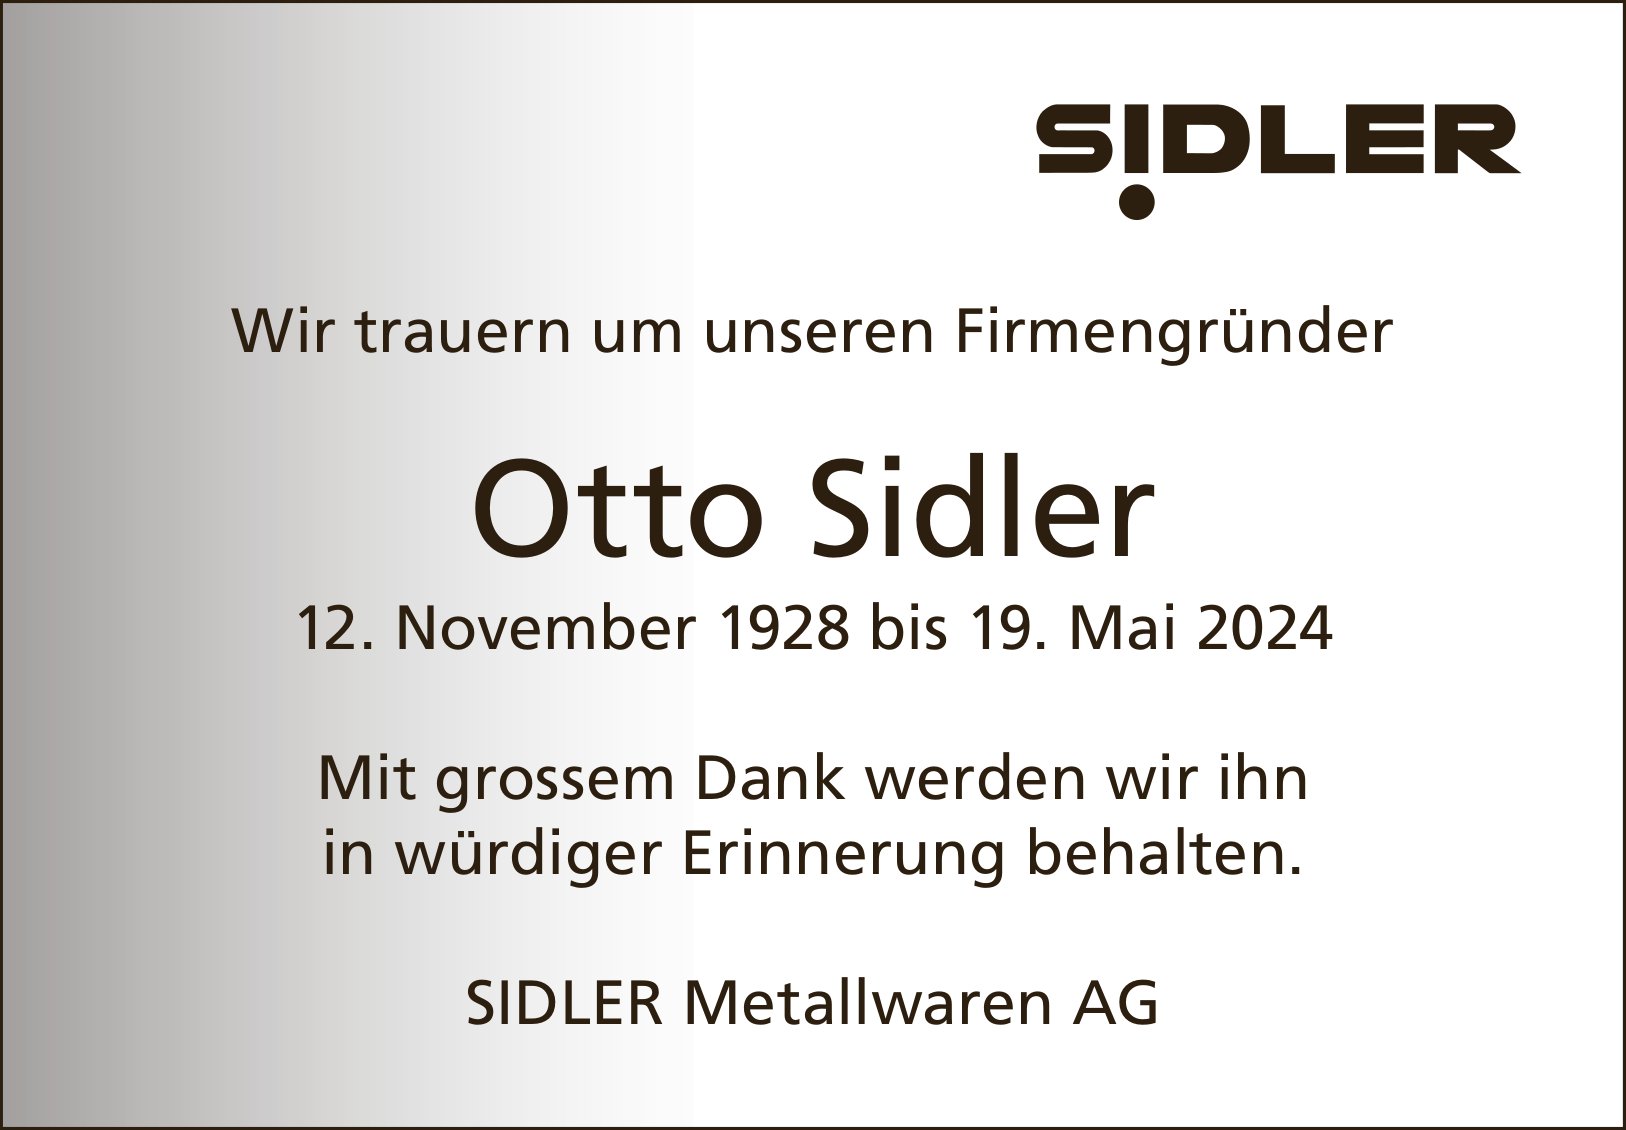 Otto Sidler - Sidler Metallwaren AG